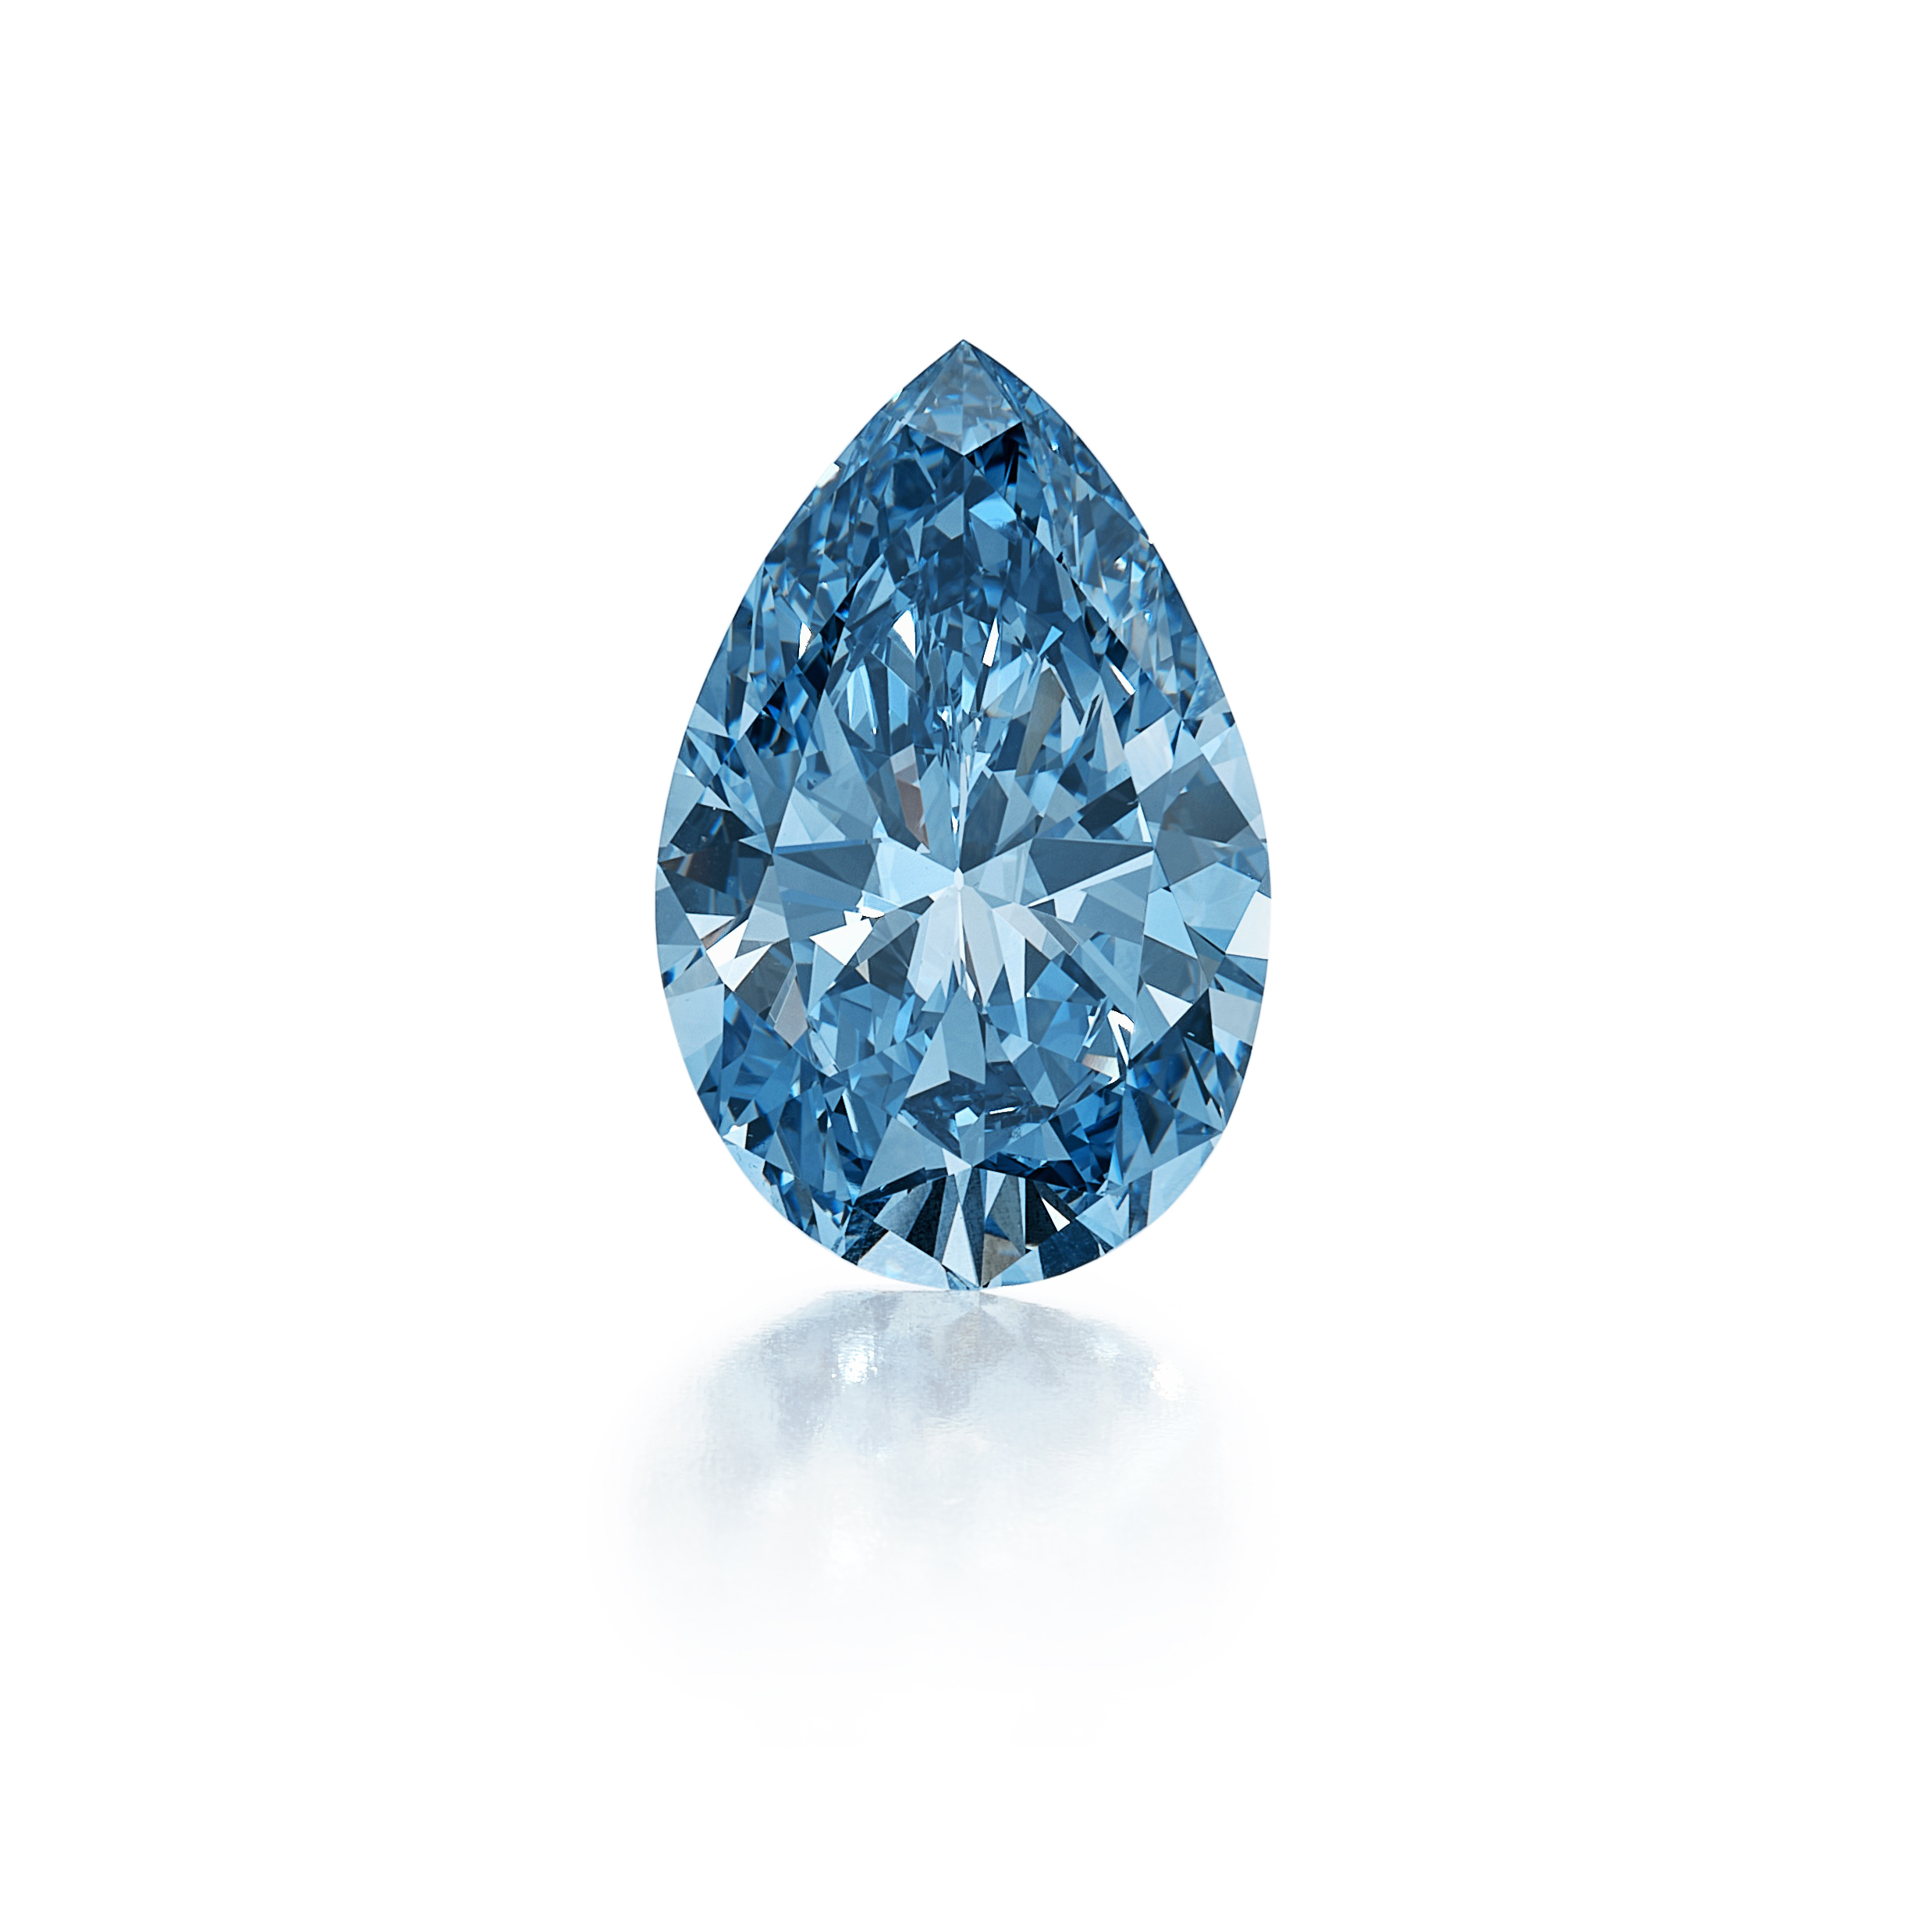 Bulgari Laguna Blu Diamond: um extraordinário diamante azul vívido de 11,16 quilates